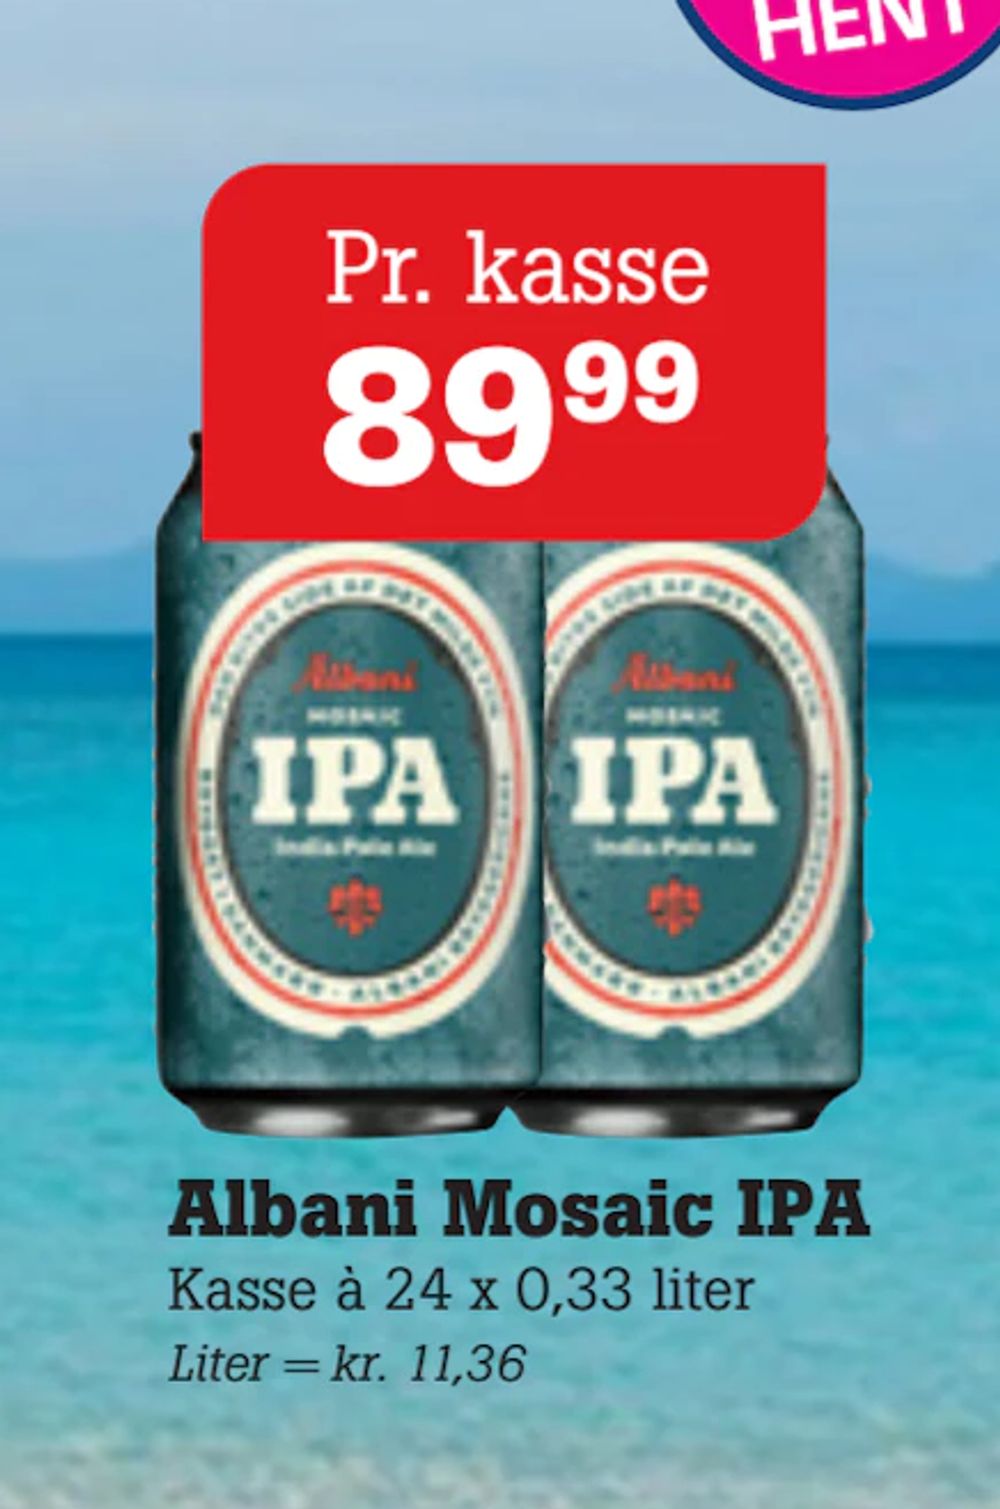 Tilbud på Albani Mosaic IPA fra Poetzsch Padborg til 89,99 kr.